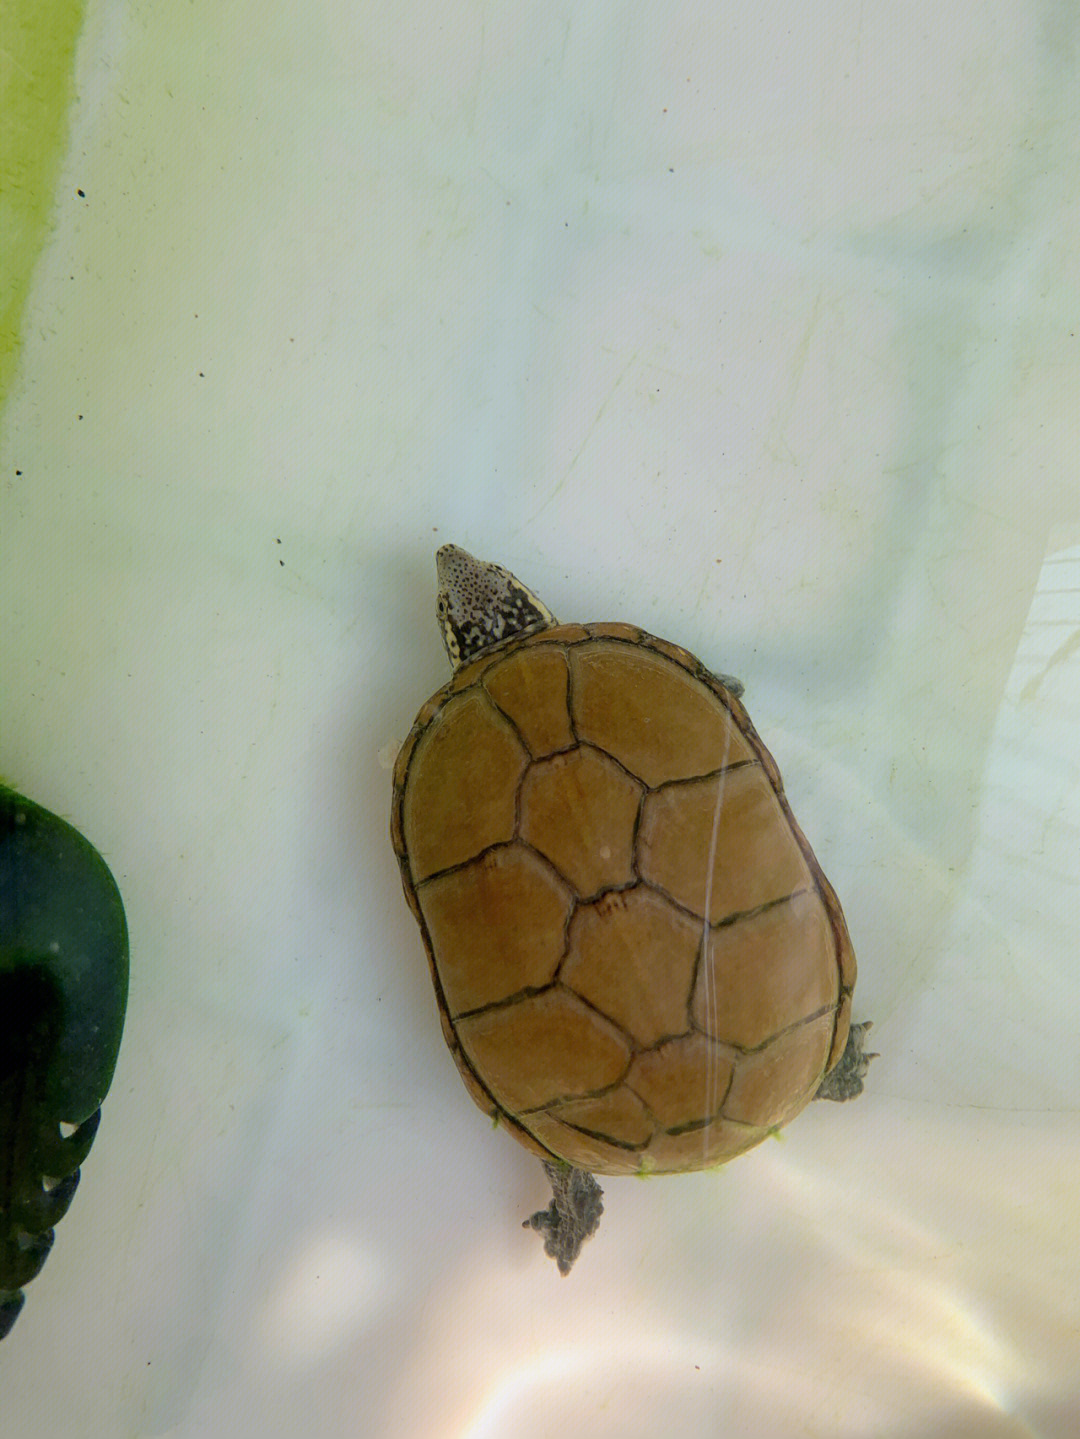 头盔蛋龟繁殖图片